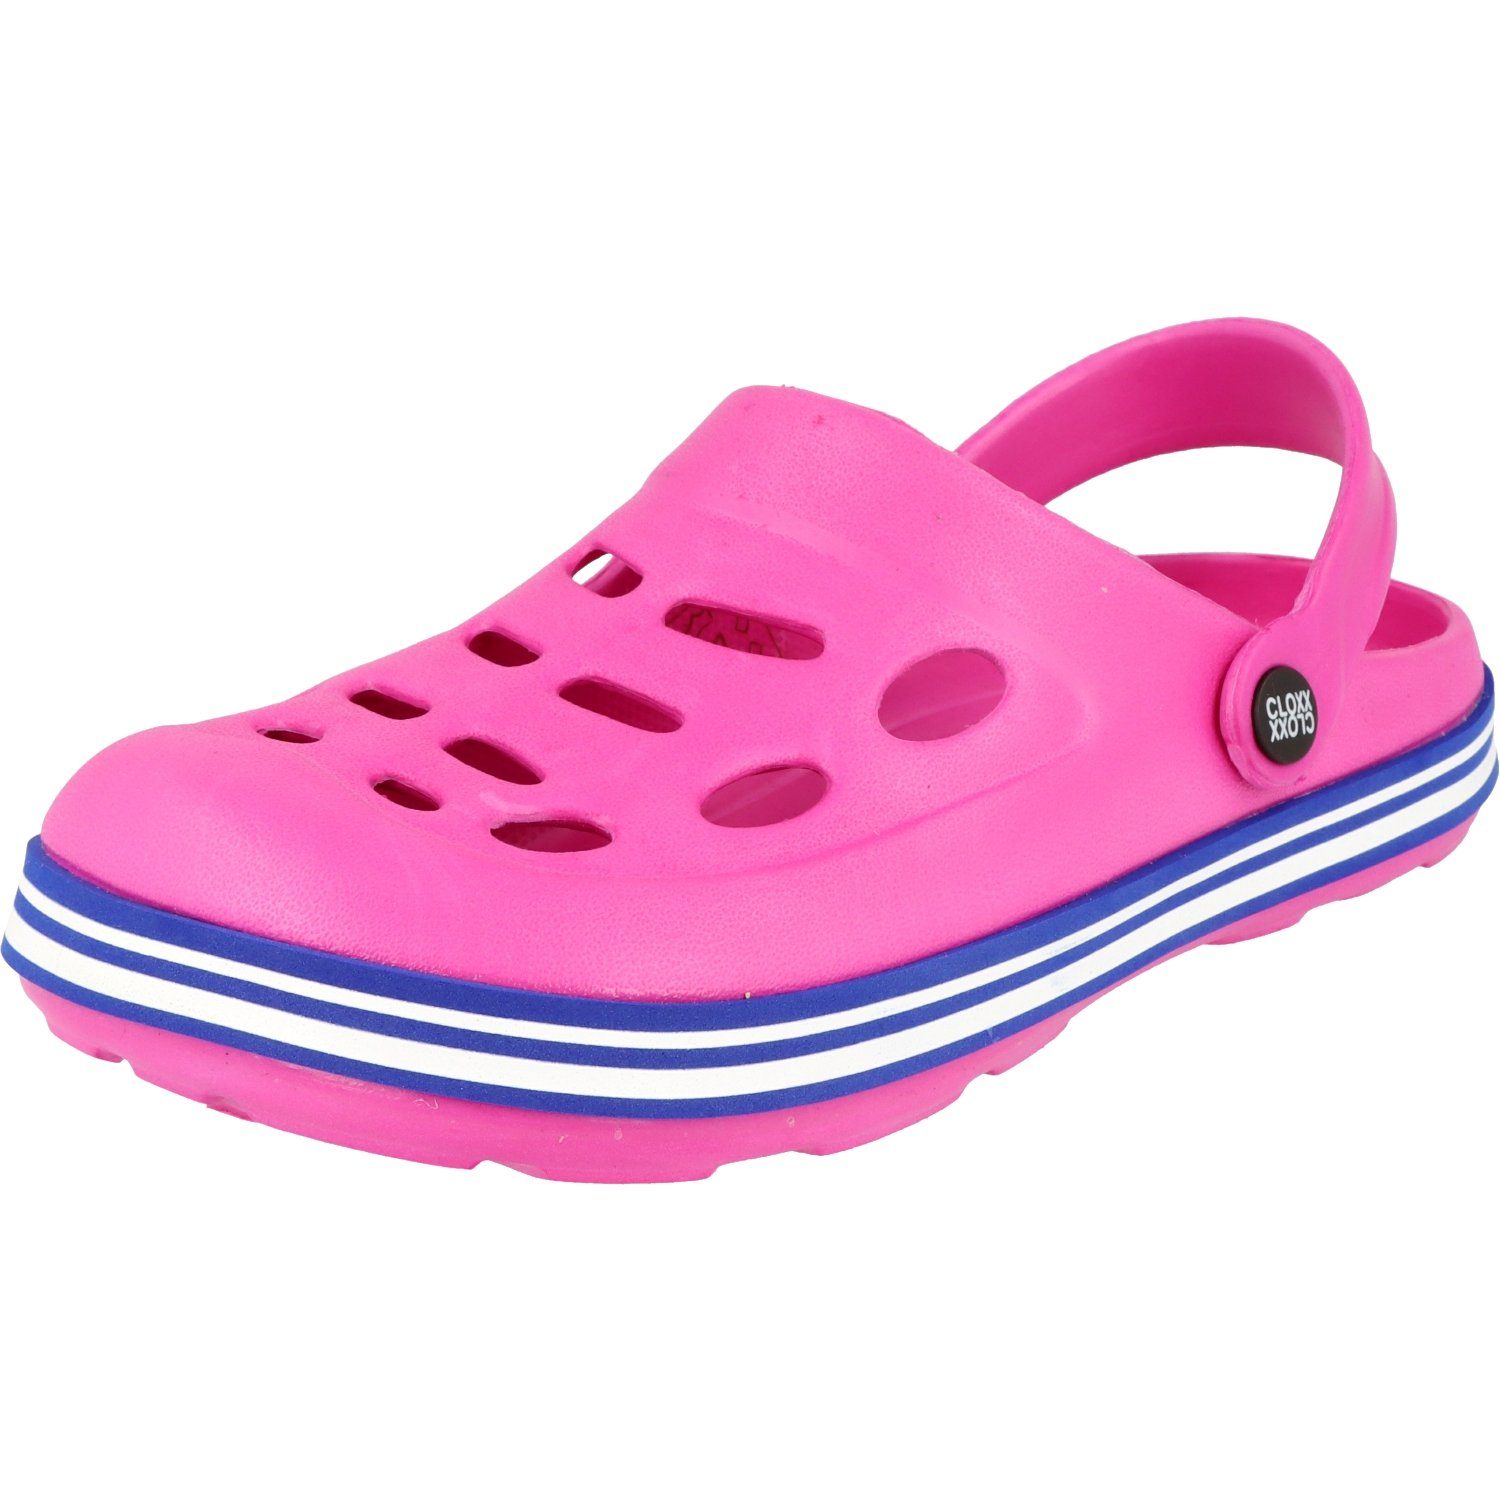 Cloxx Damen/Mädchen R88410.33 Pantoletten Hausschuhe Clogs Gummi Pink Clog Schuhe